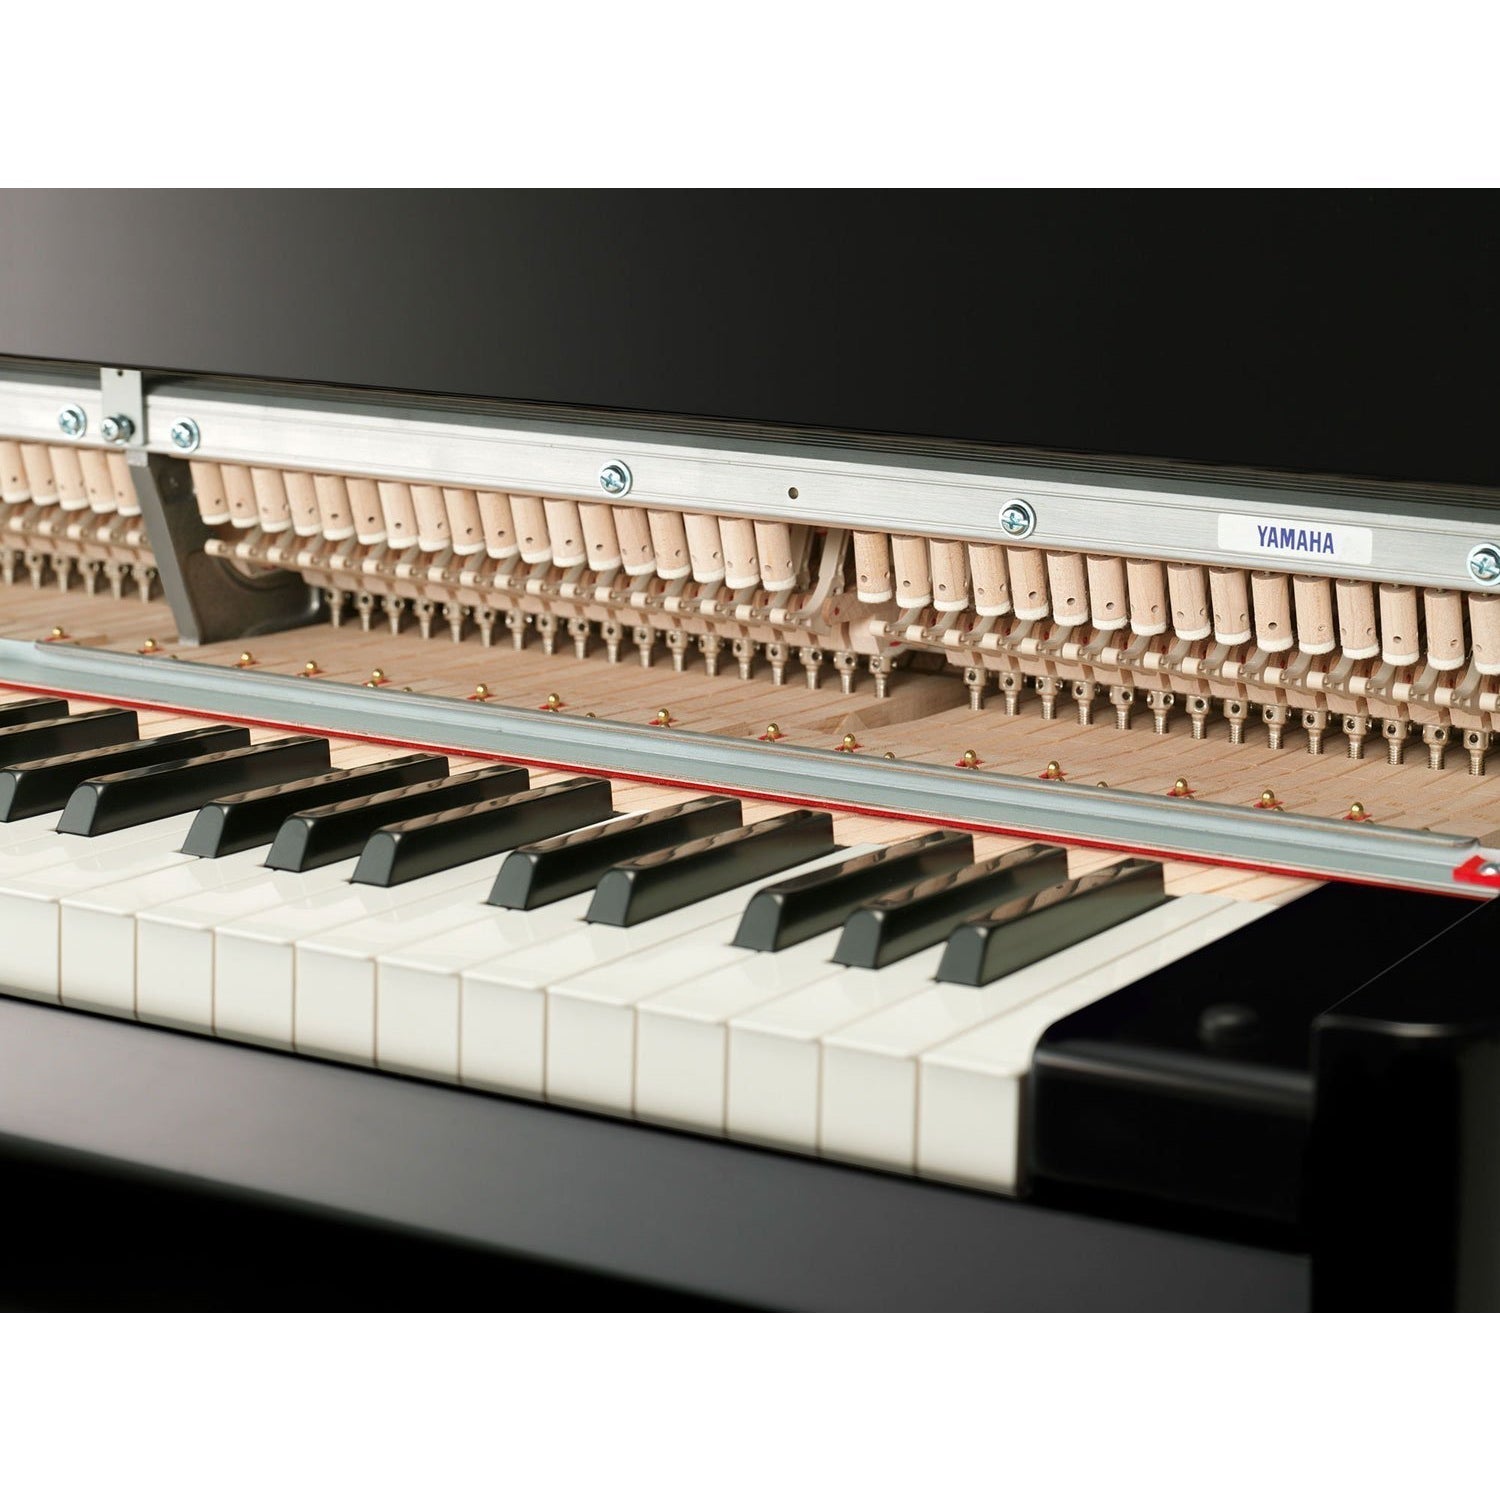 Đàn Piano Điện Yamaha N3 AvantGrand - Qua Sử Dụng